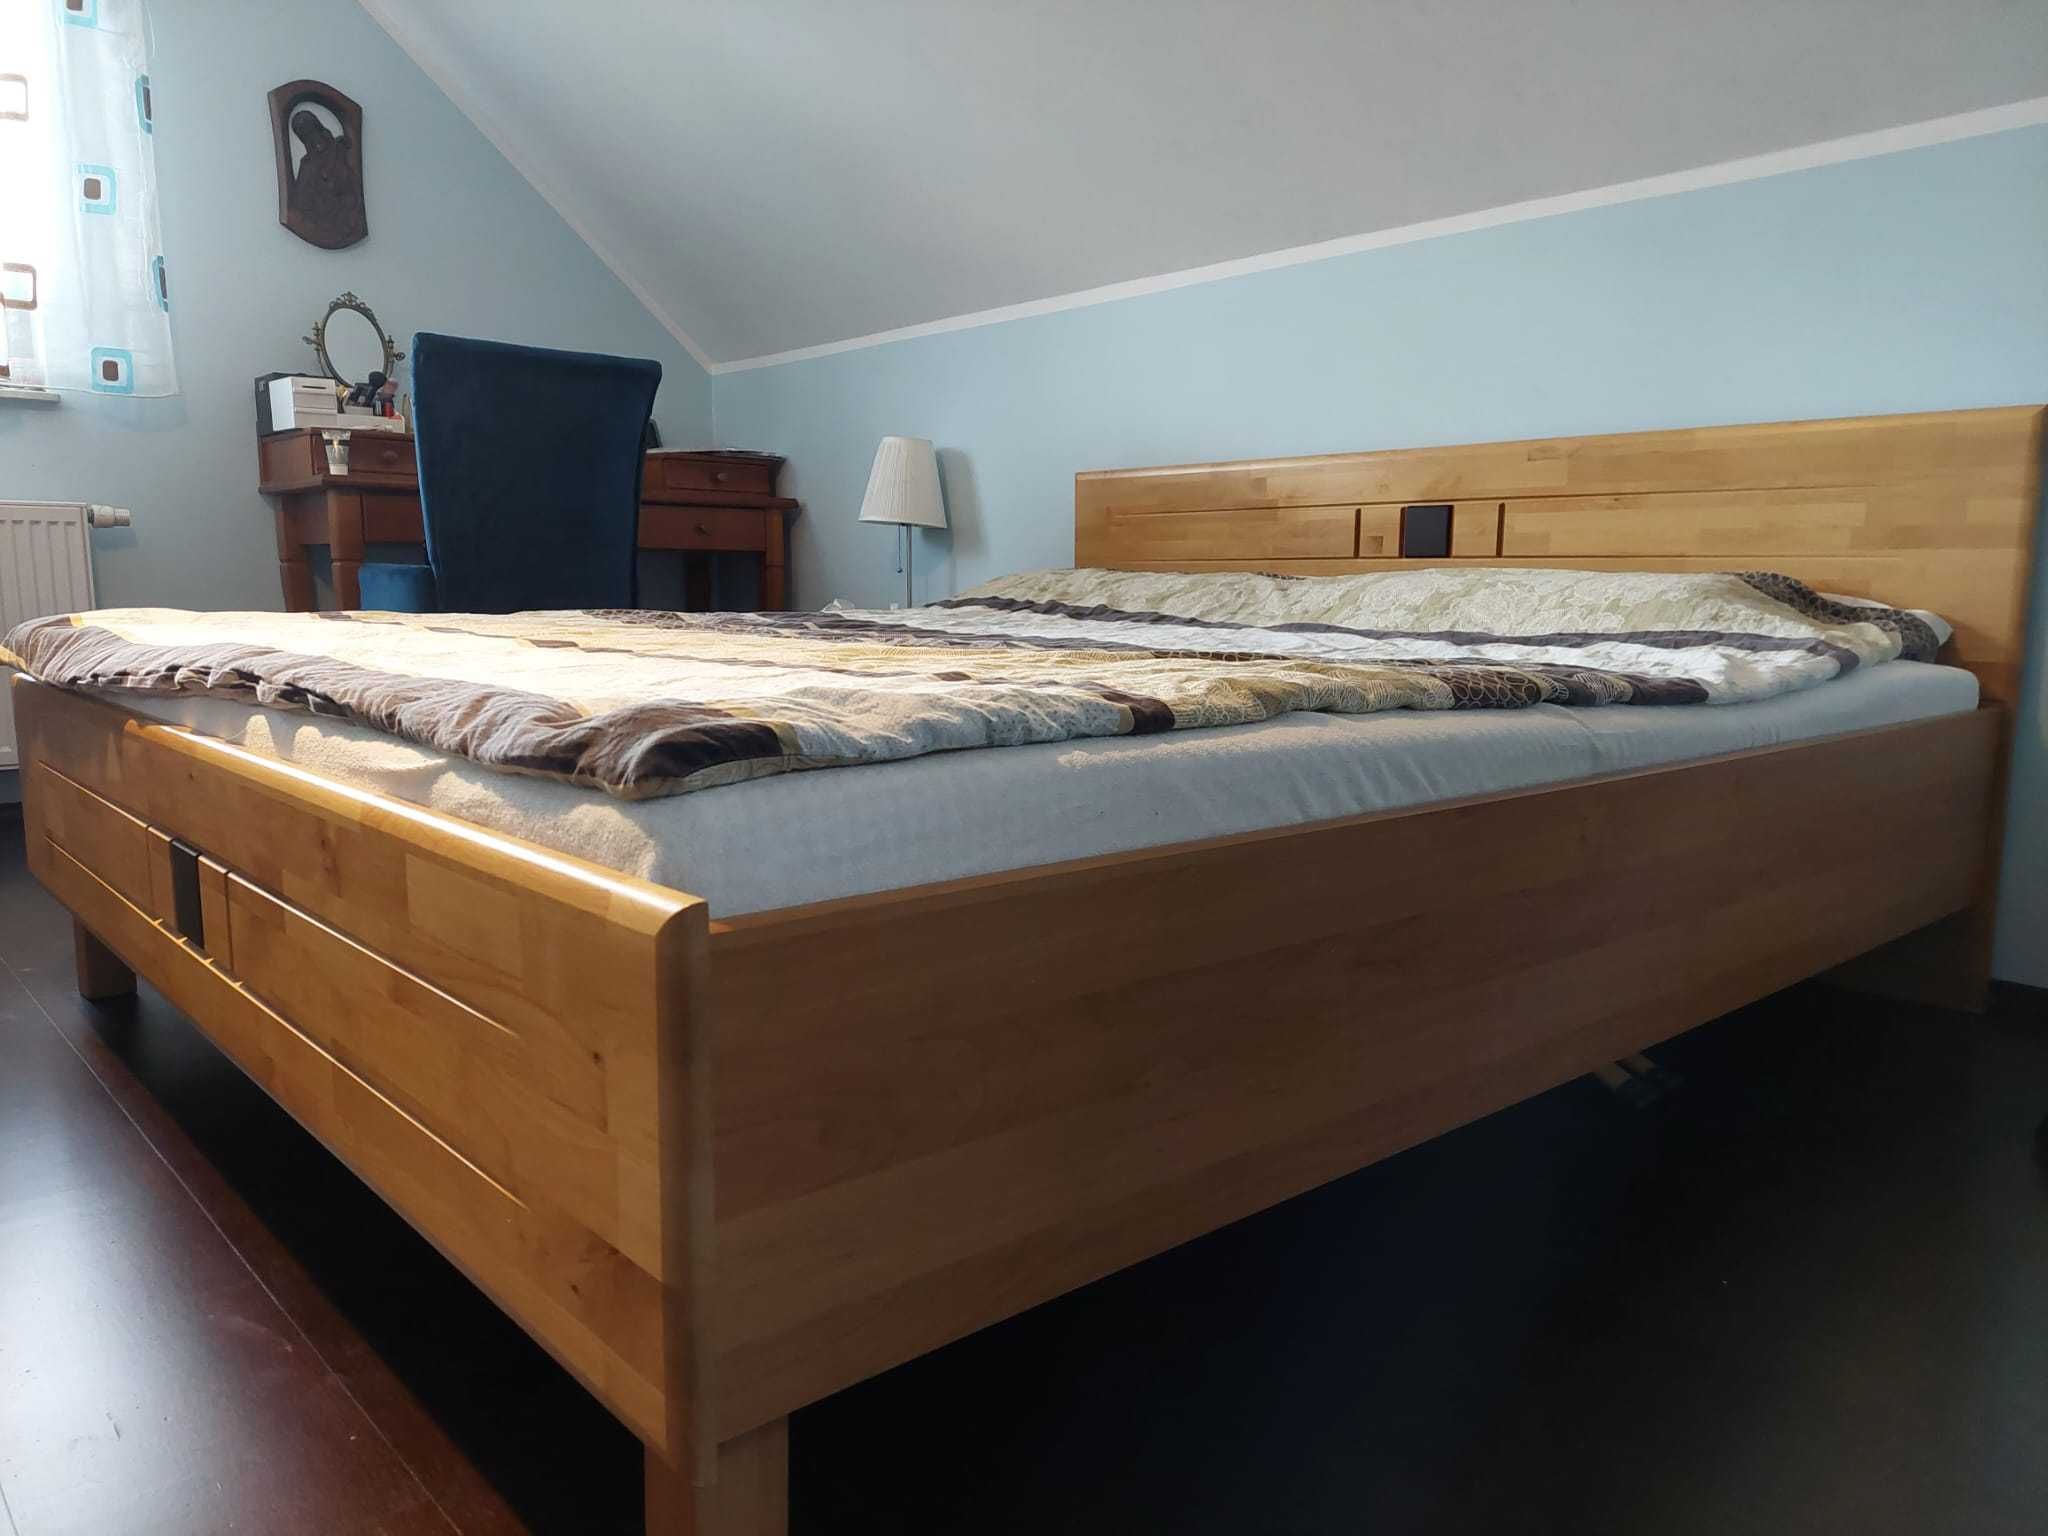 Łóżko drewniane 180x200, szafki nocne.